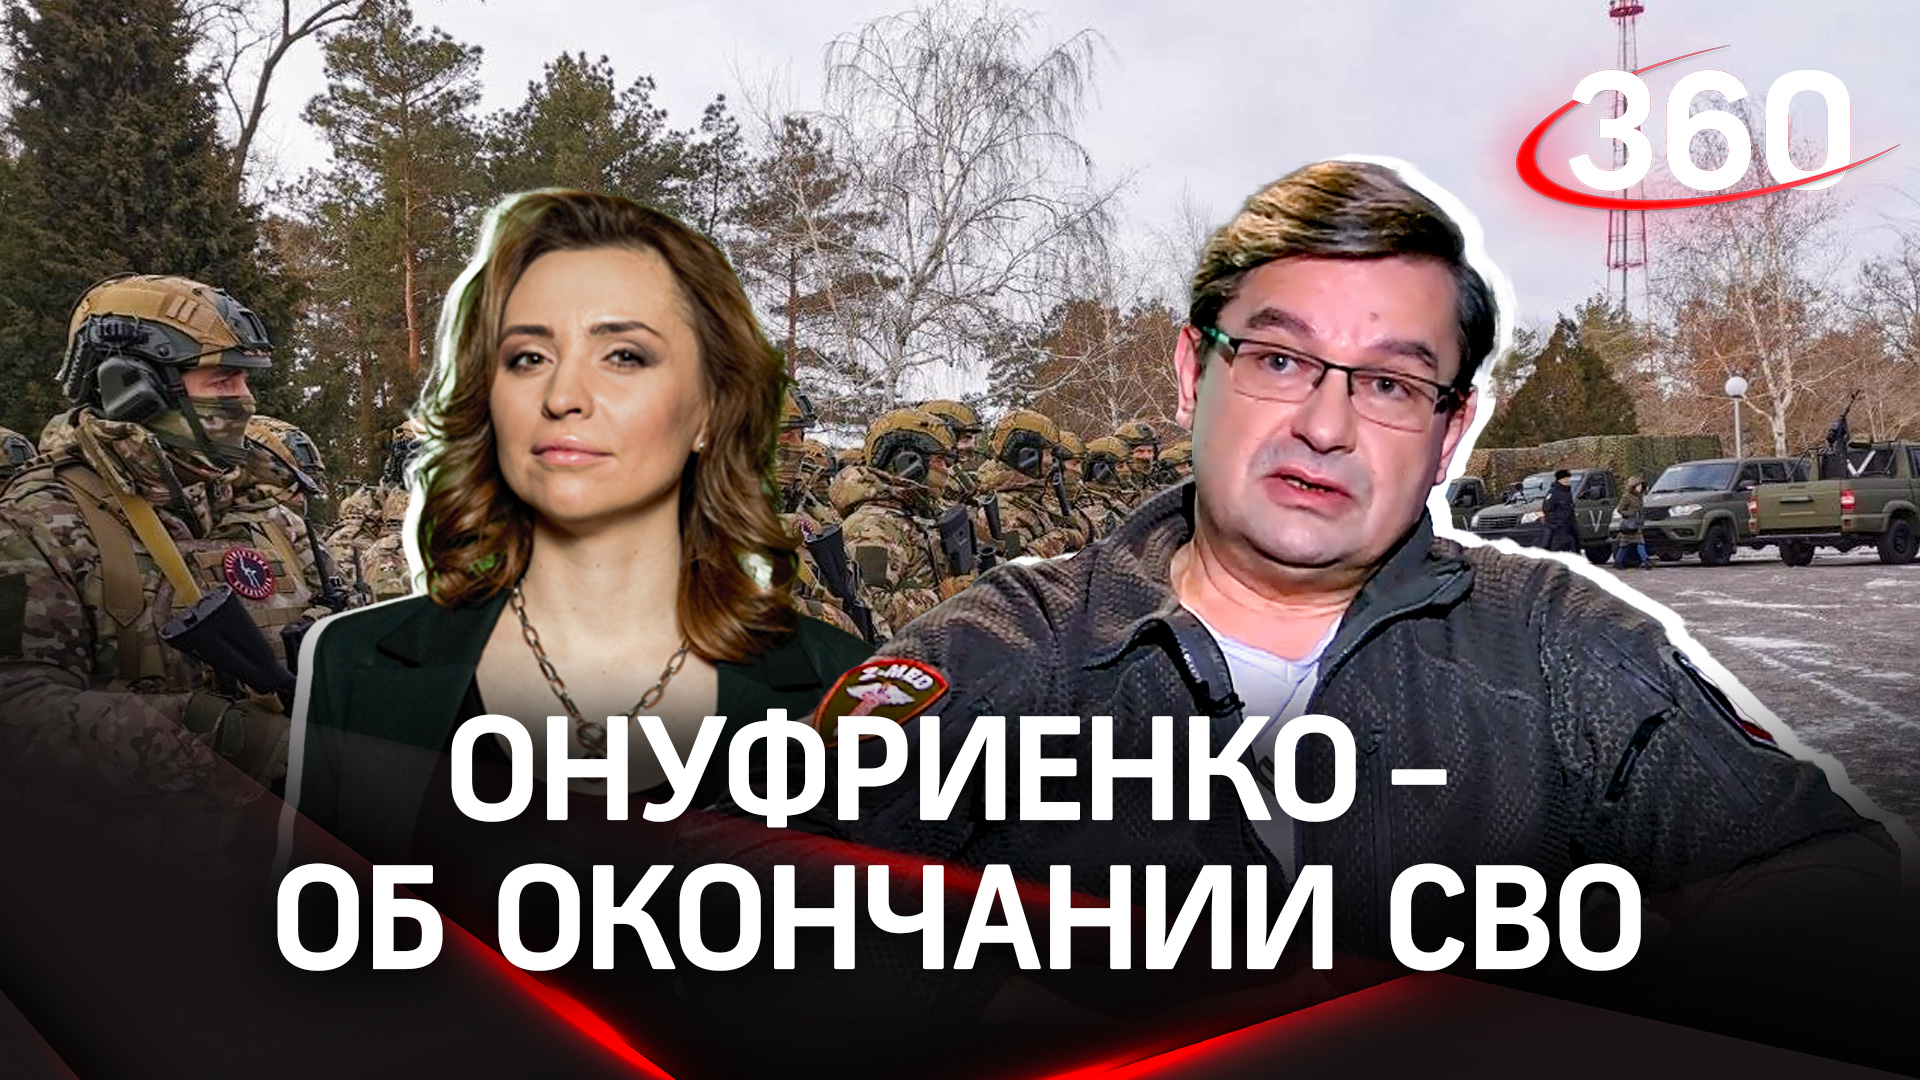 Онуфриенко: «Невозможно освободить Донецк и успокоиться» | Об окончании СВО